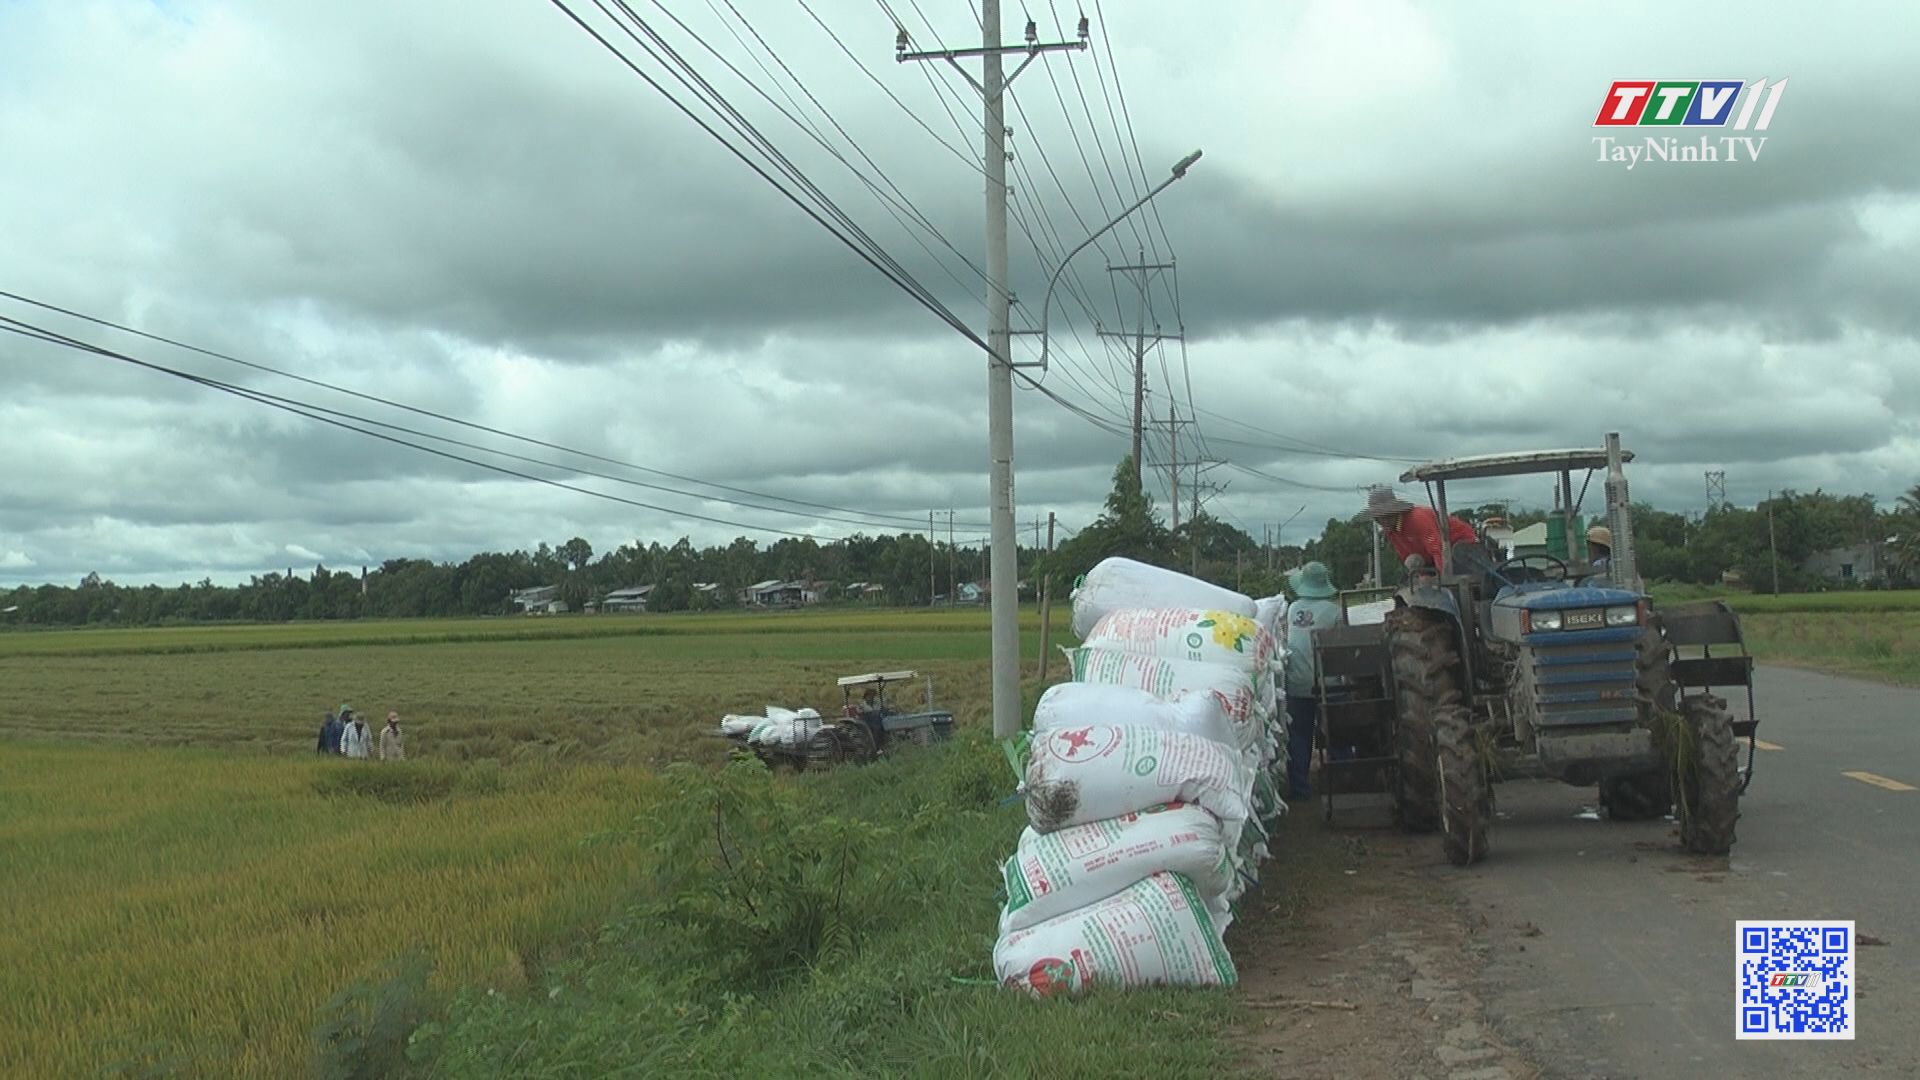 Canh tác lúa gắn với liên kết tiêu thụ sản phẩm | NÔNG NGHIỆP TÂY NINH | TayNinhTV